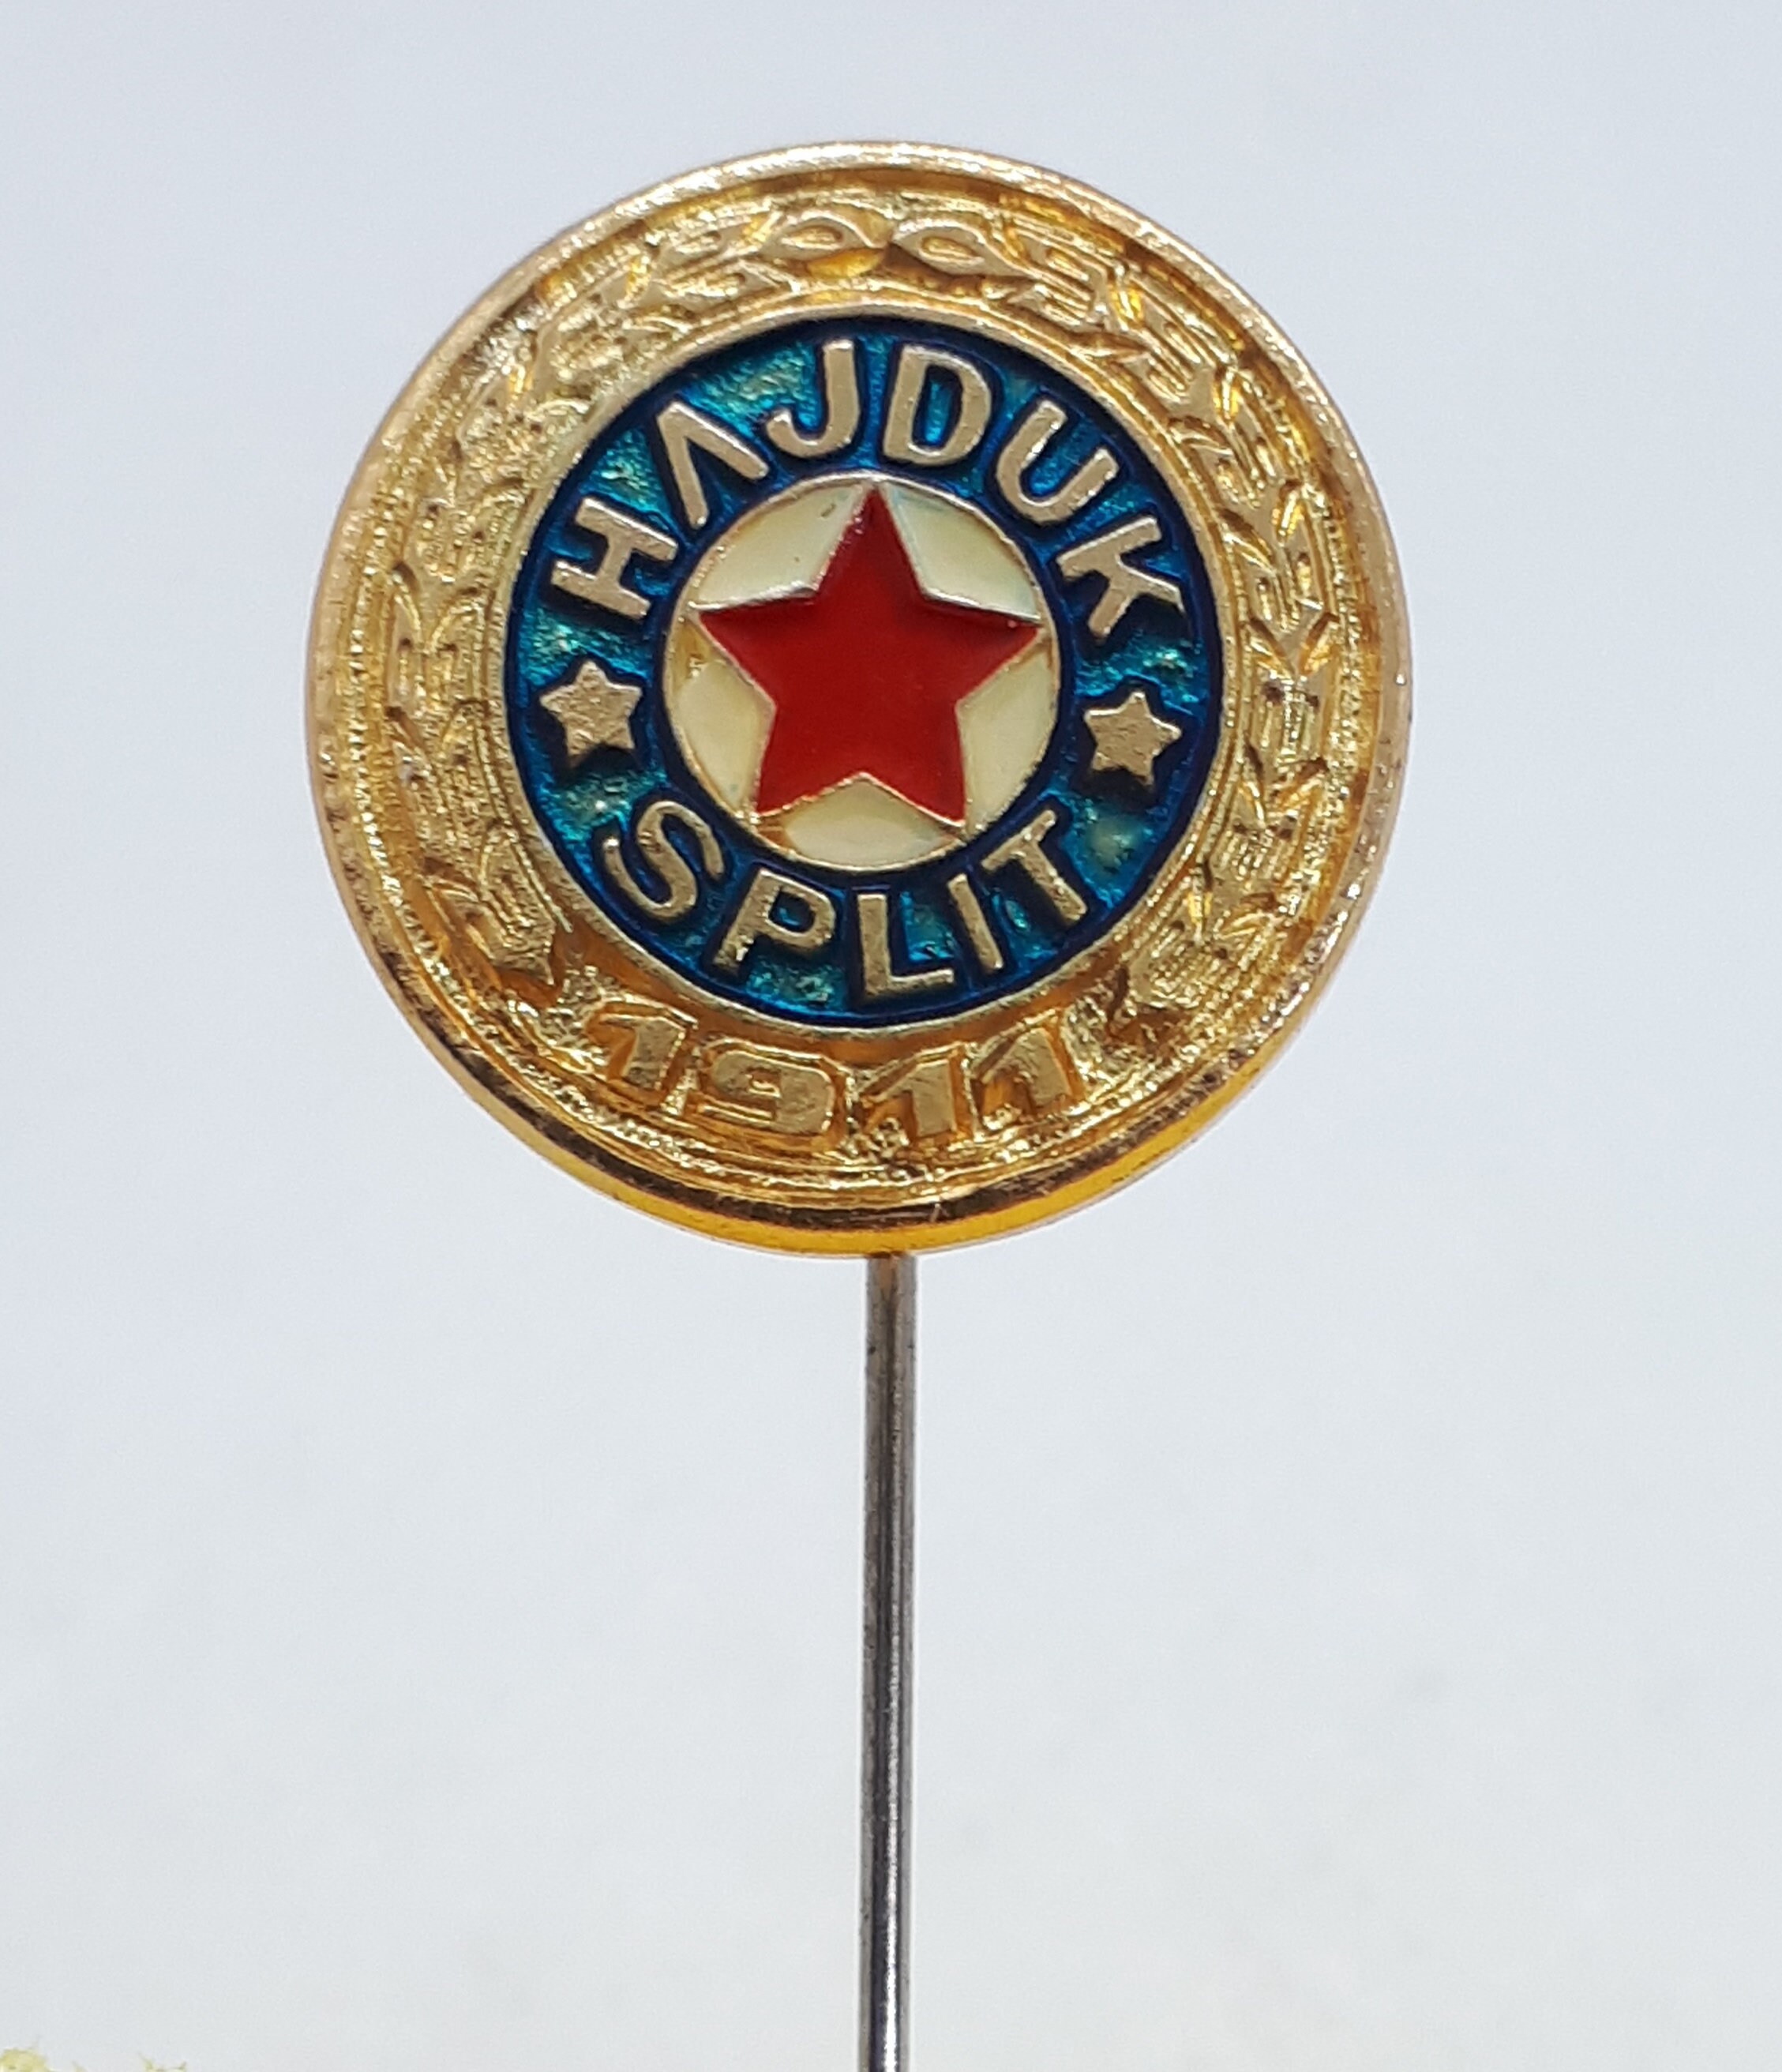 HAJDUK SPLIT Official Heraldry symbol 1911 Pin for Sale by Slavia